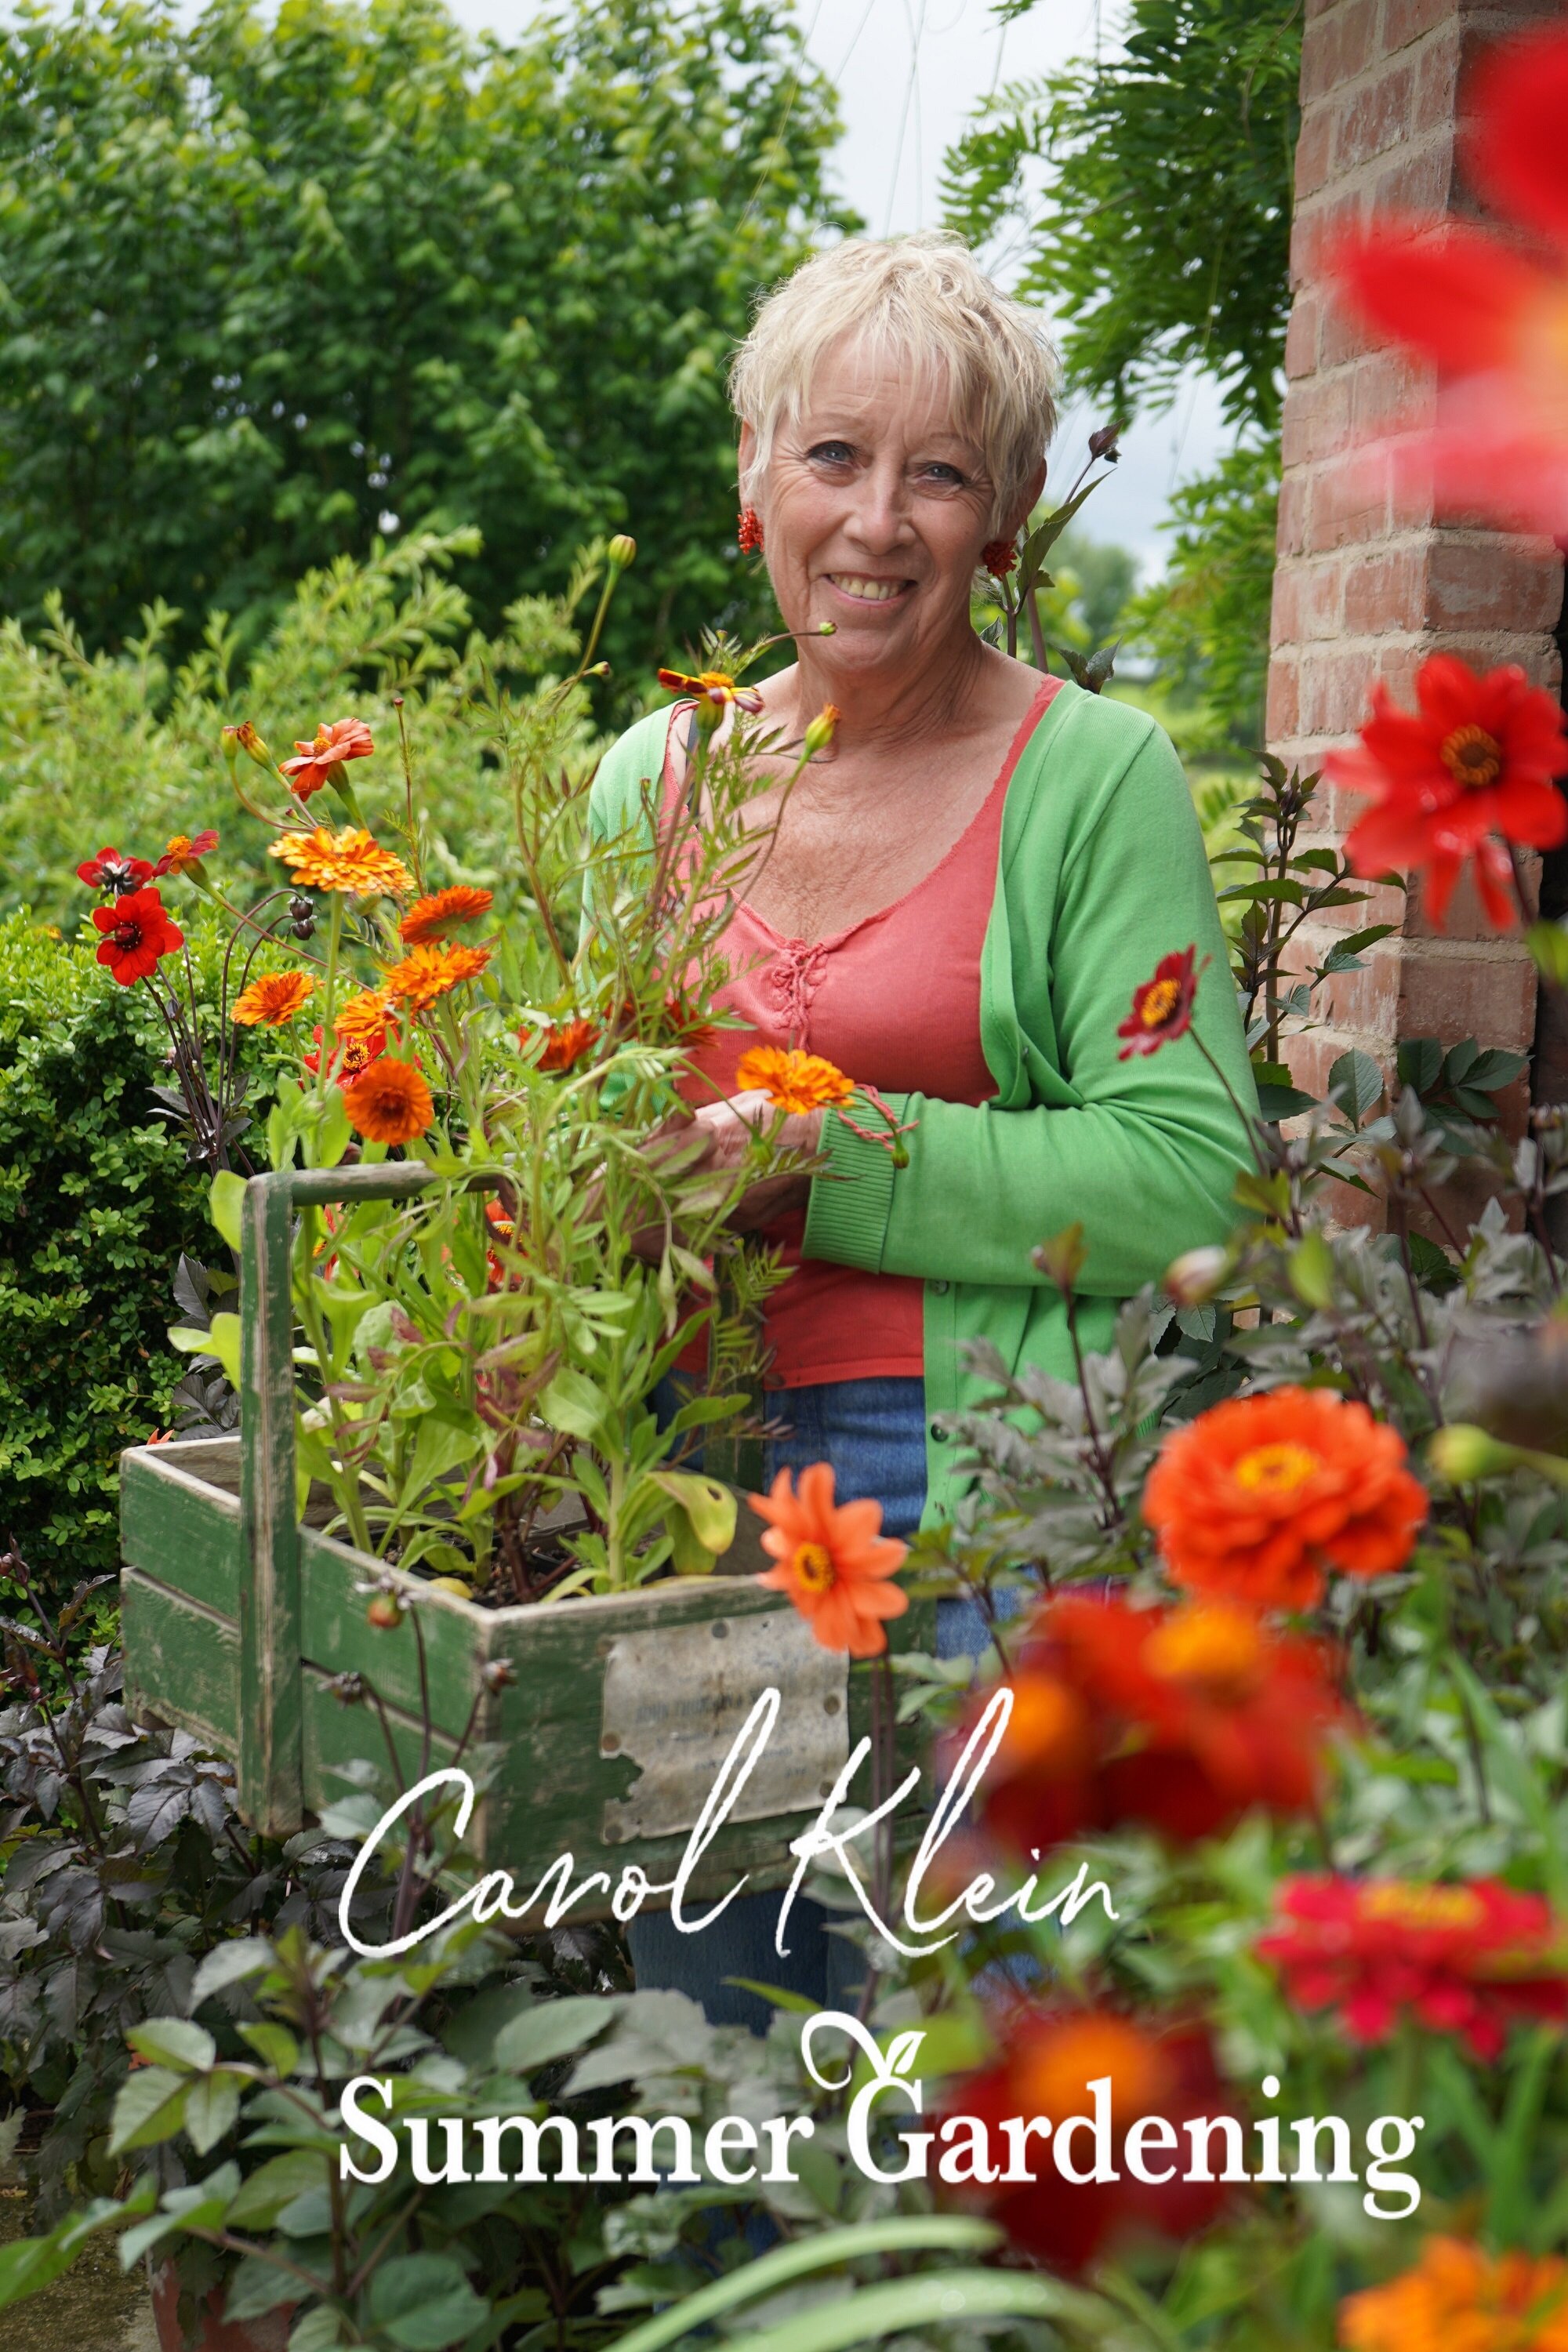 Summer Gardening with Carol Klein ne zaman